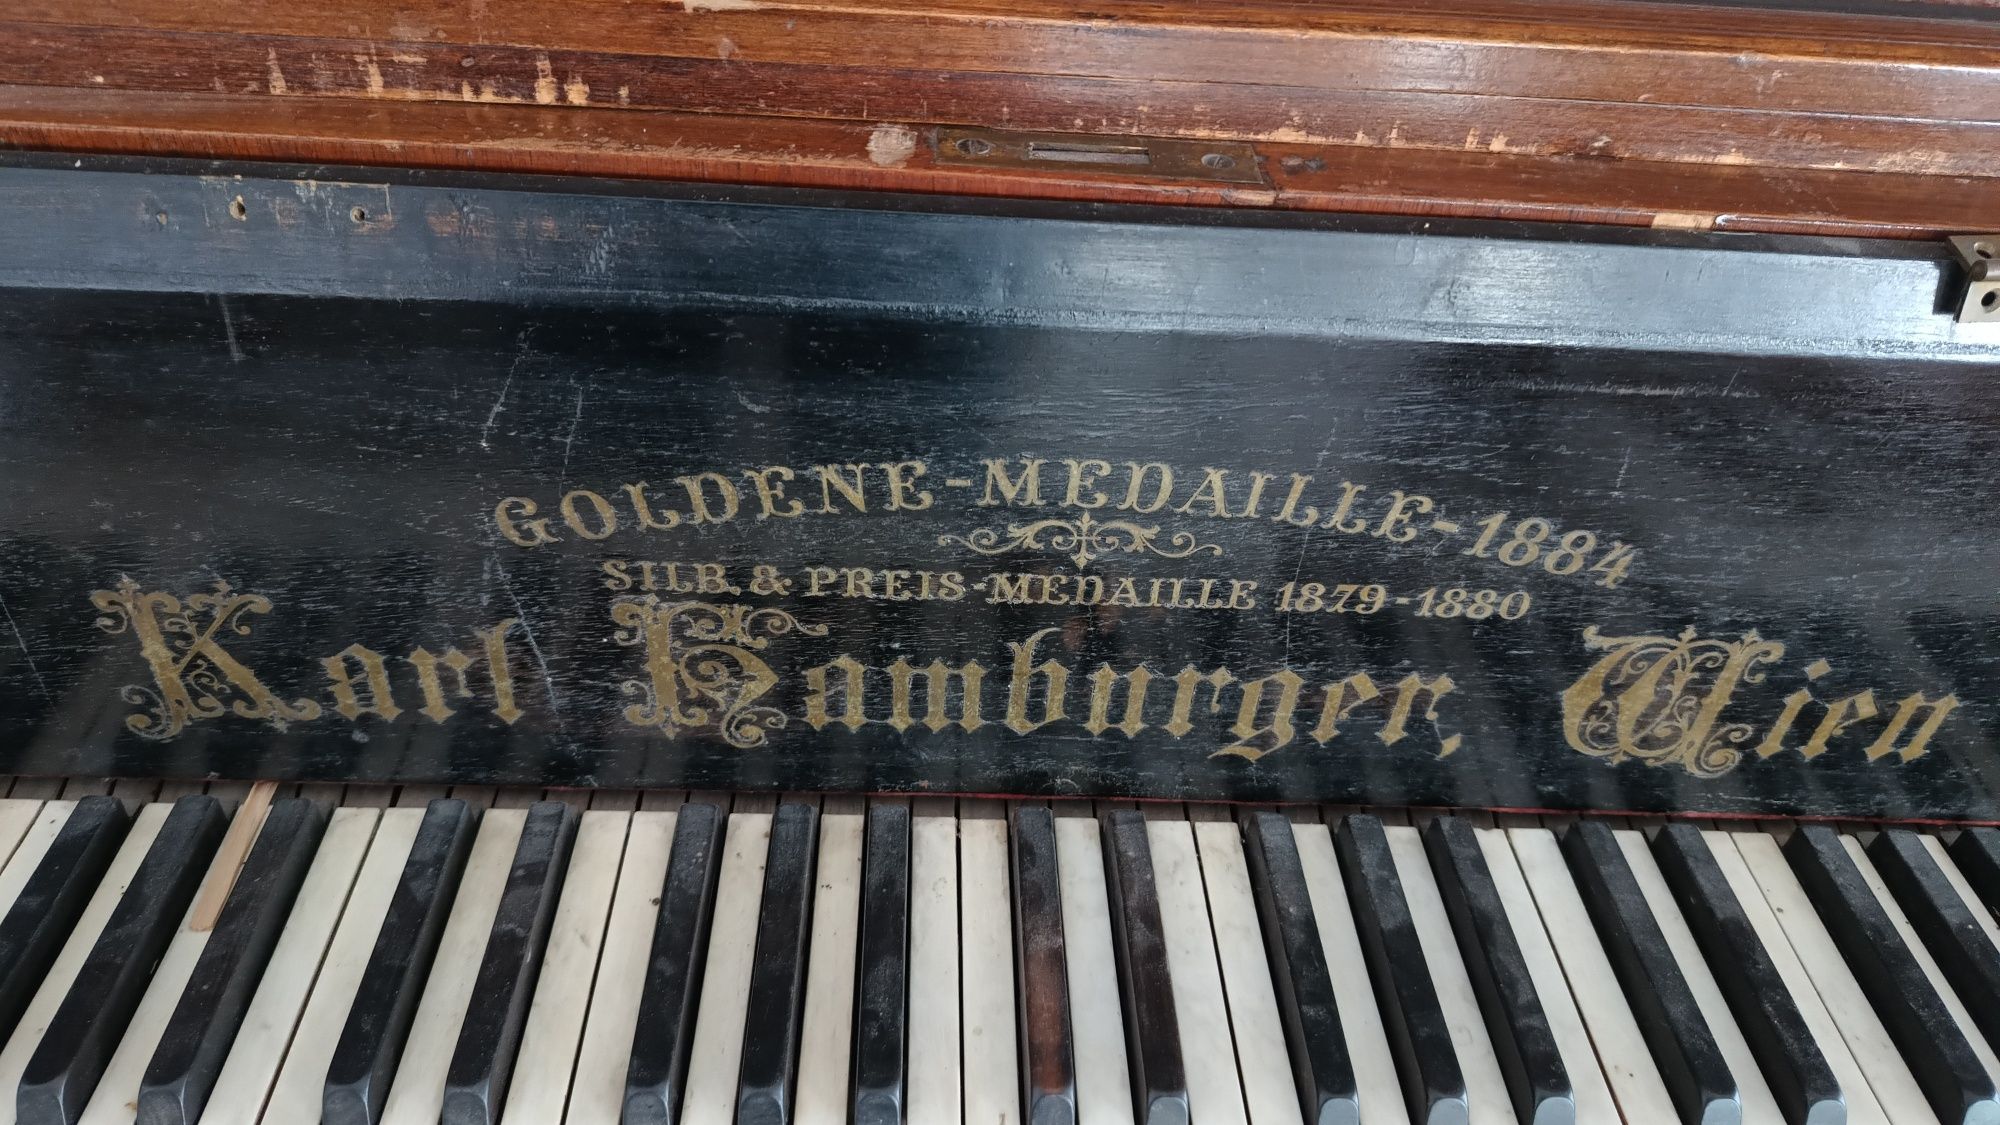 Fortepian Goldene Medallie 1884